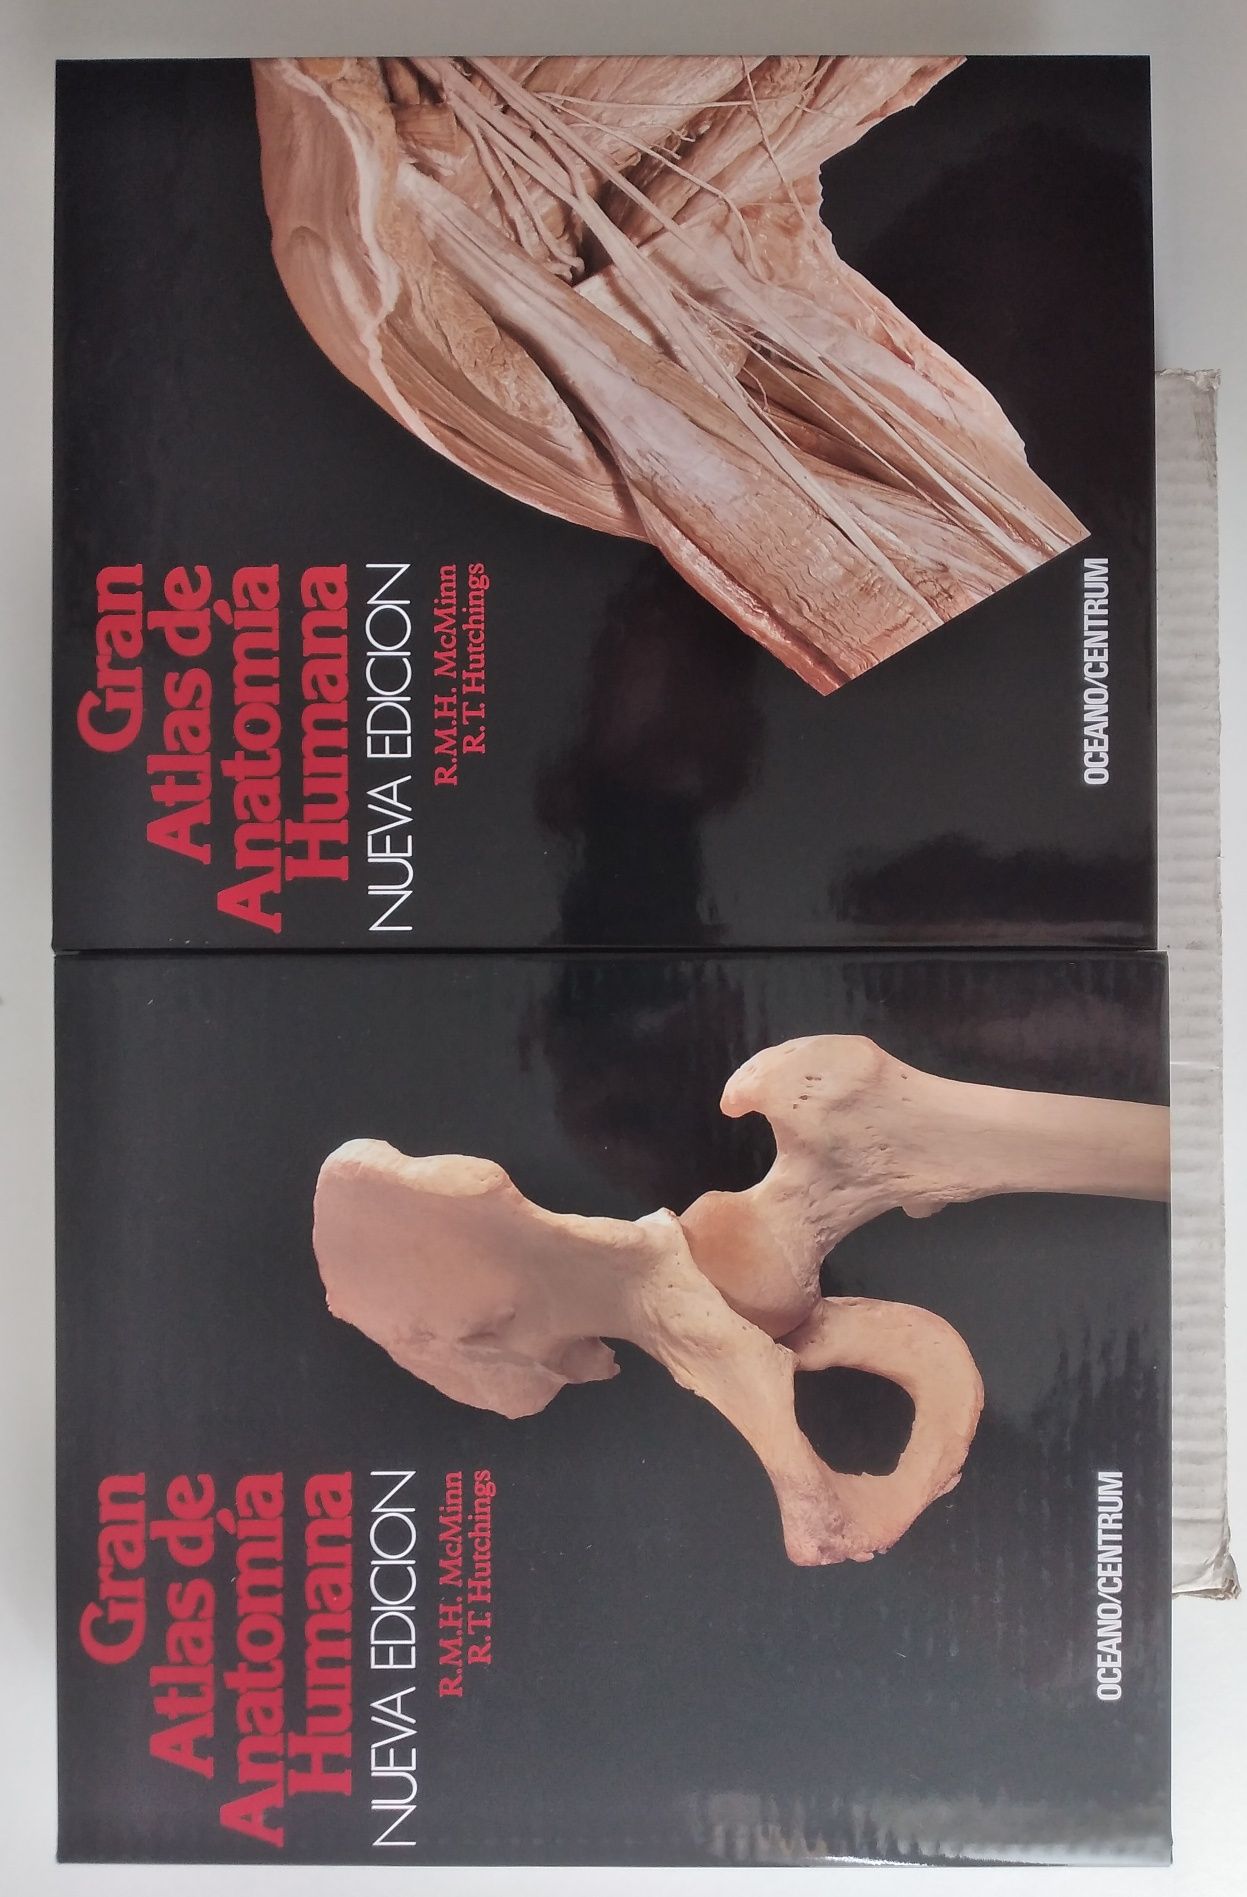 Atlas Anatomia Humana - 2 livros novos em Espanhol